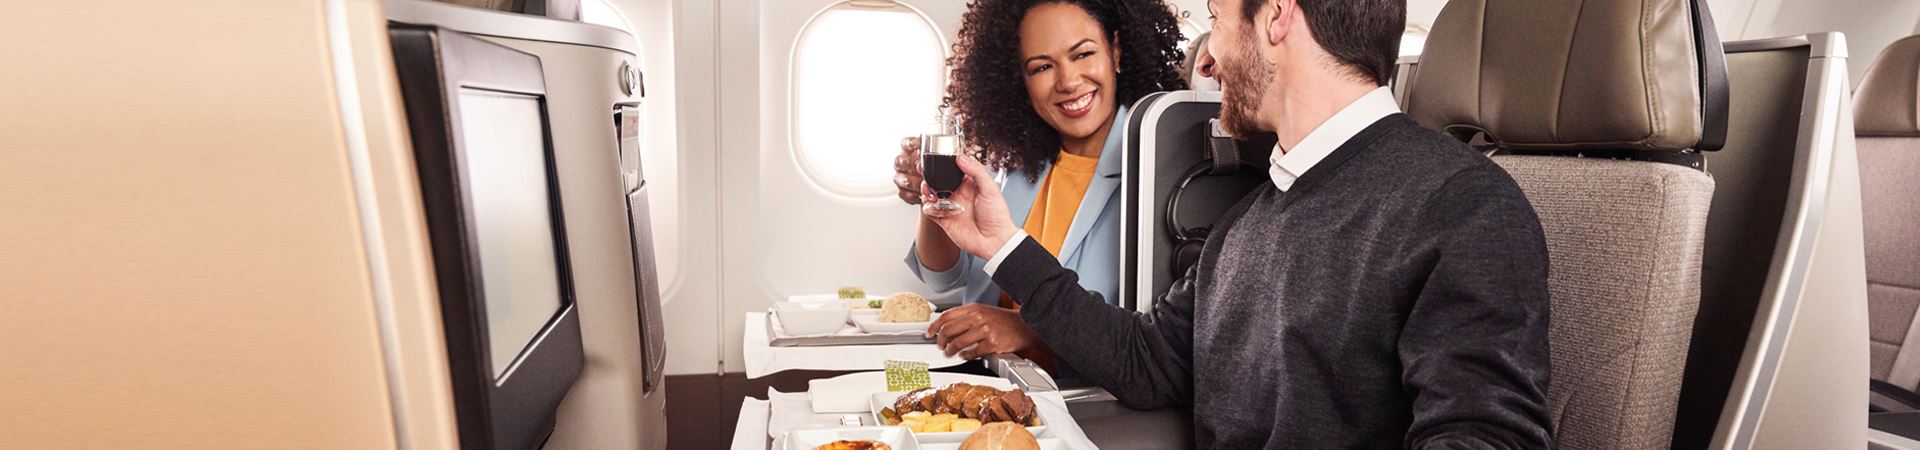 Un uomo e una donna, sorridenti, seduti fianco a fianco a bordo di un aereo TAP. Entrambi tengono un bicchiere in mano e fanno un brindisi. Davanti a loro, ognuno ha un vassoio con un pasto a base di carne, pane e un "pastel de nata".